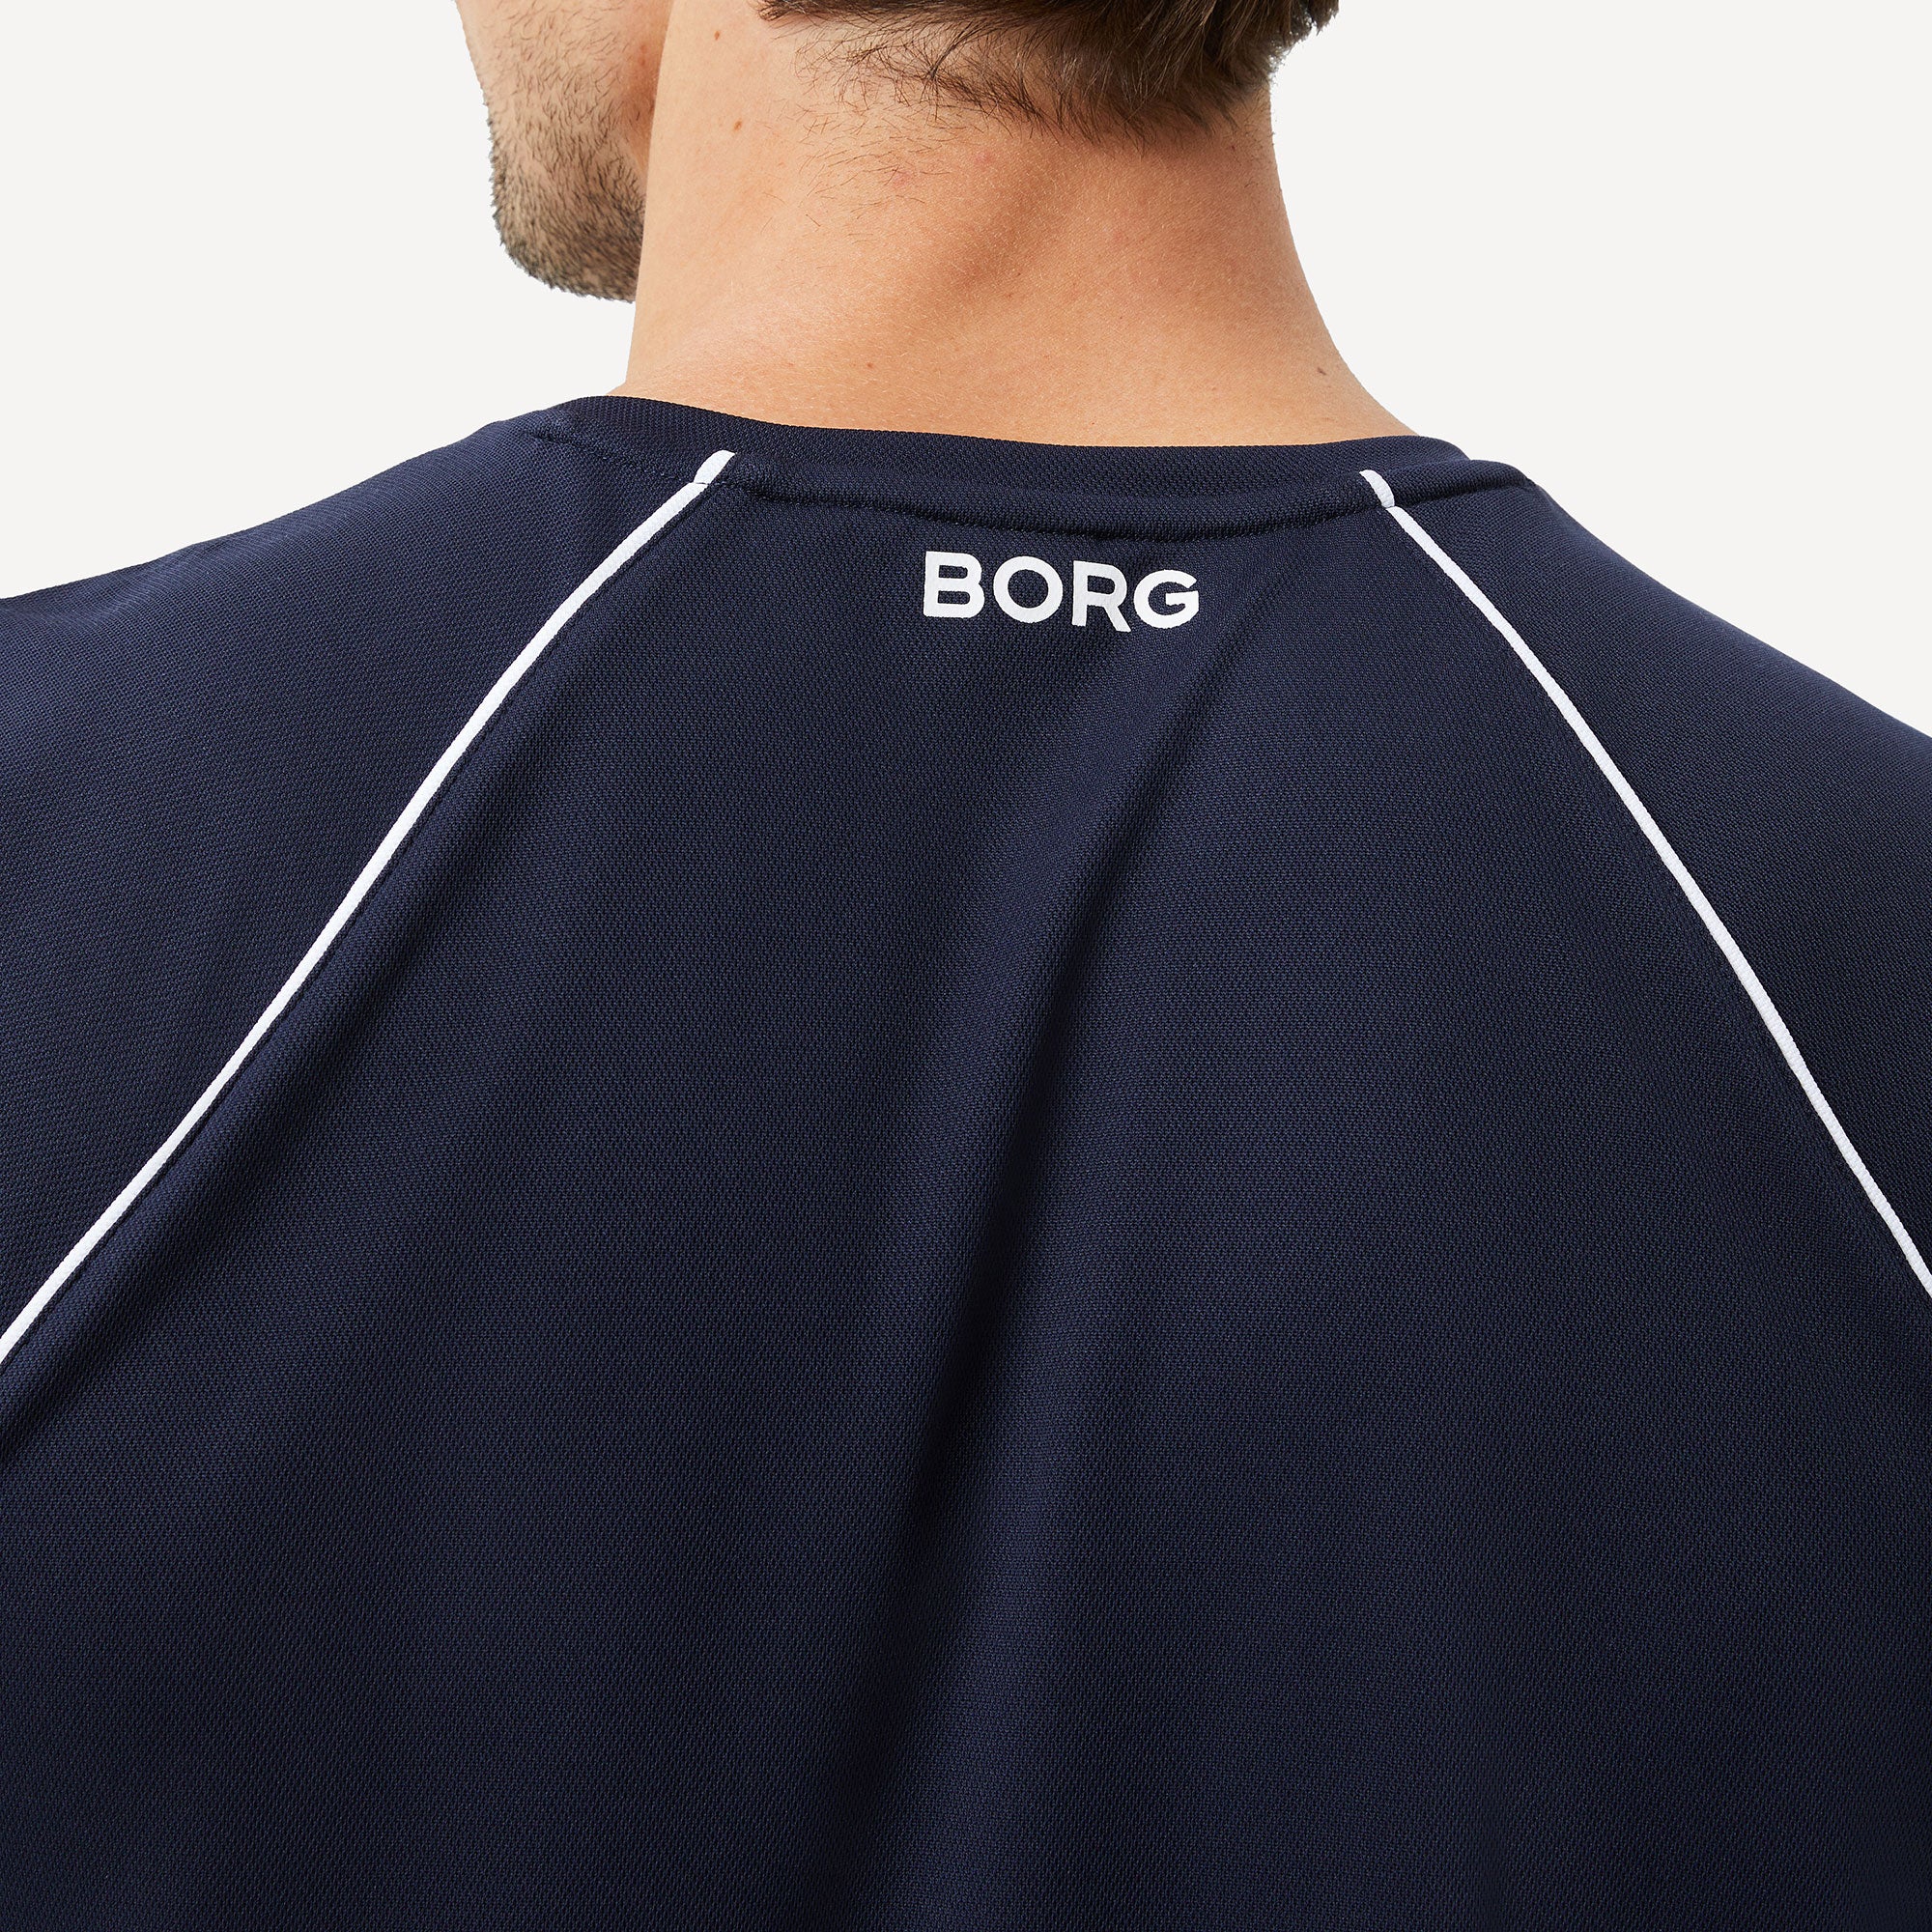 Björn Borg Ace Racquet Men's Tennis Shirt - Dark Blue (4)